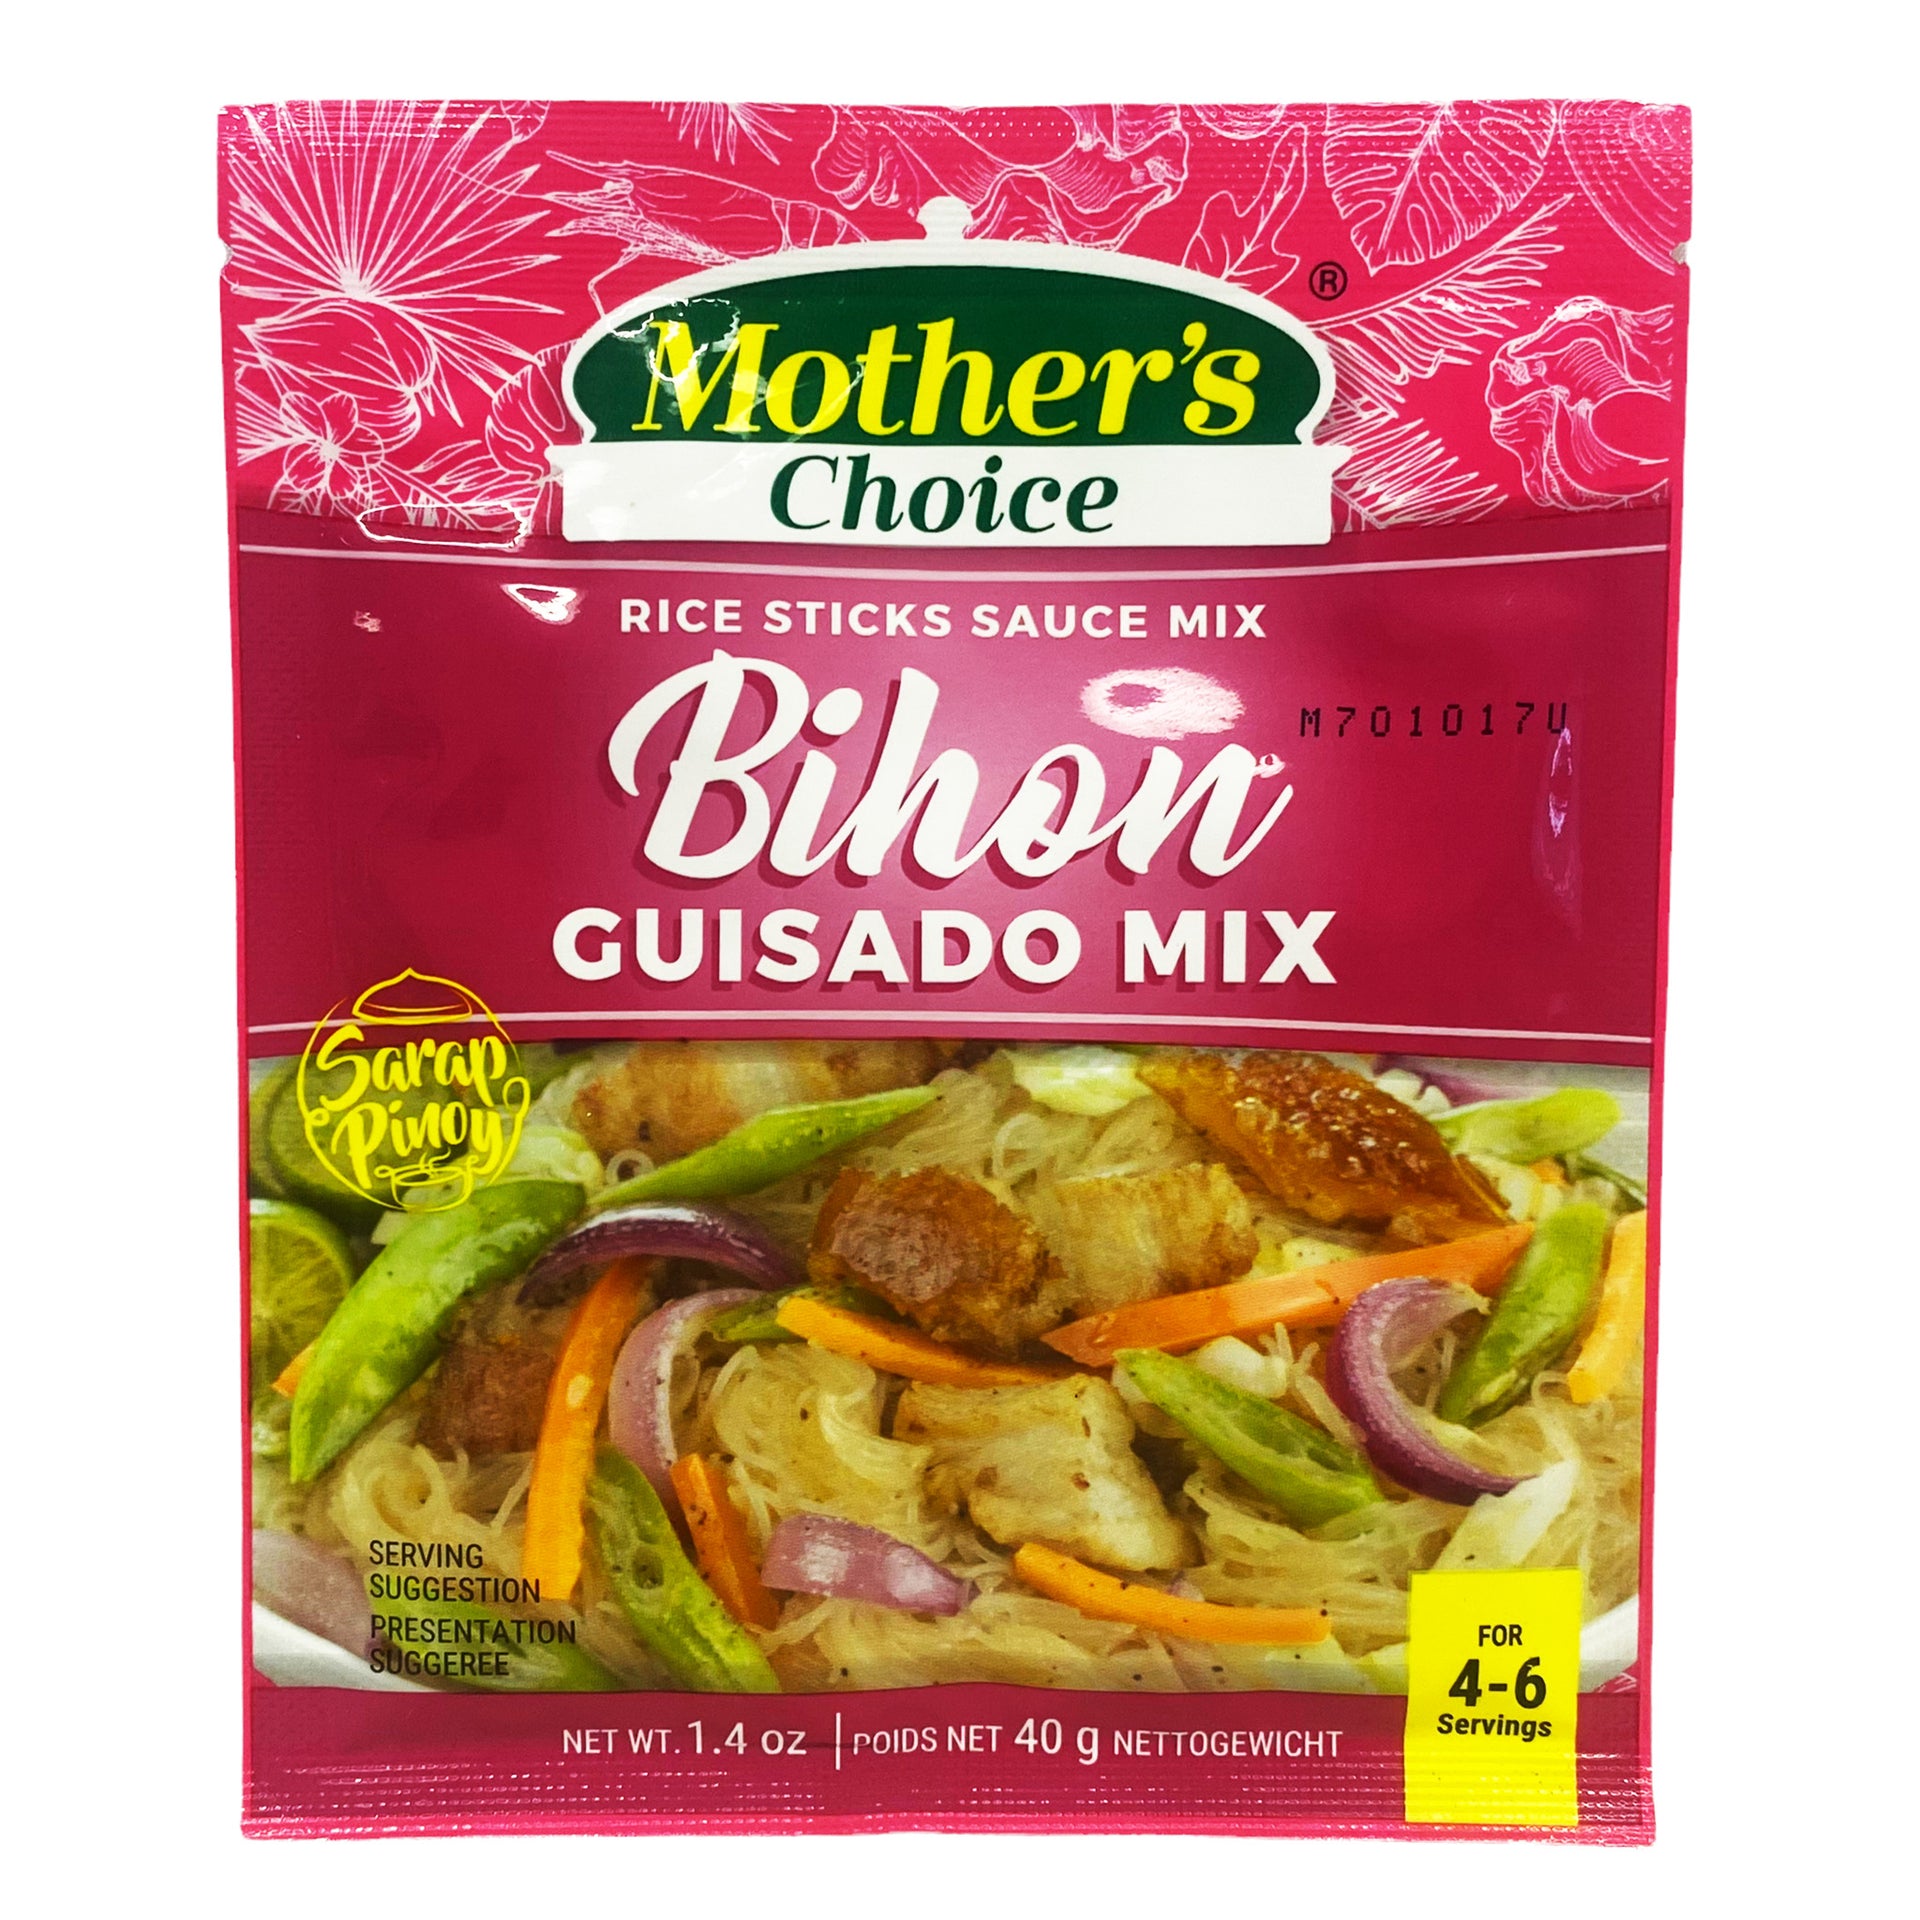 Mother's Choice Rice Sticks Sauce Mix - Bihon Cuisado Mix 1.4oz (40g)